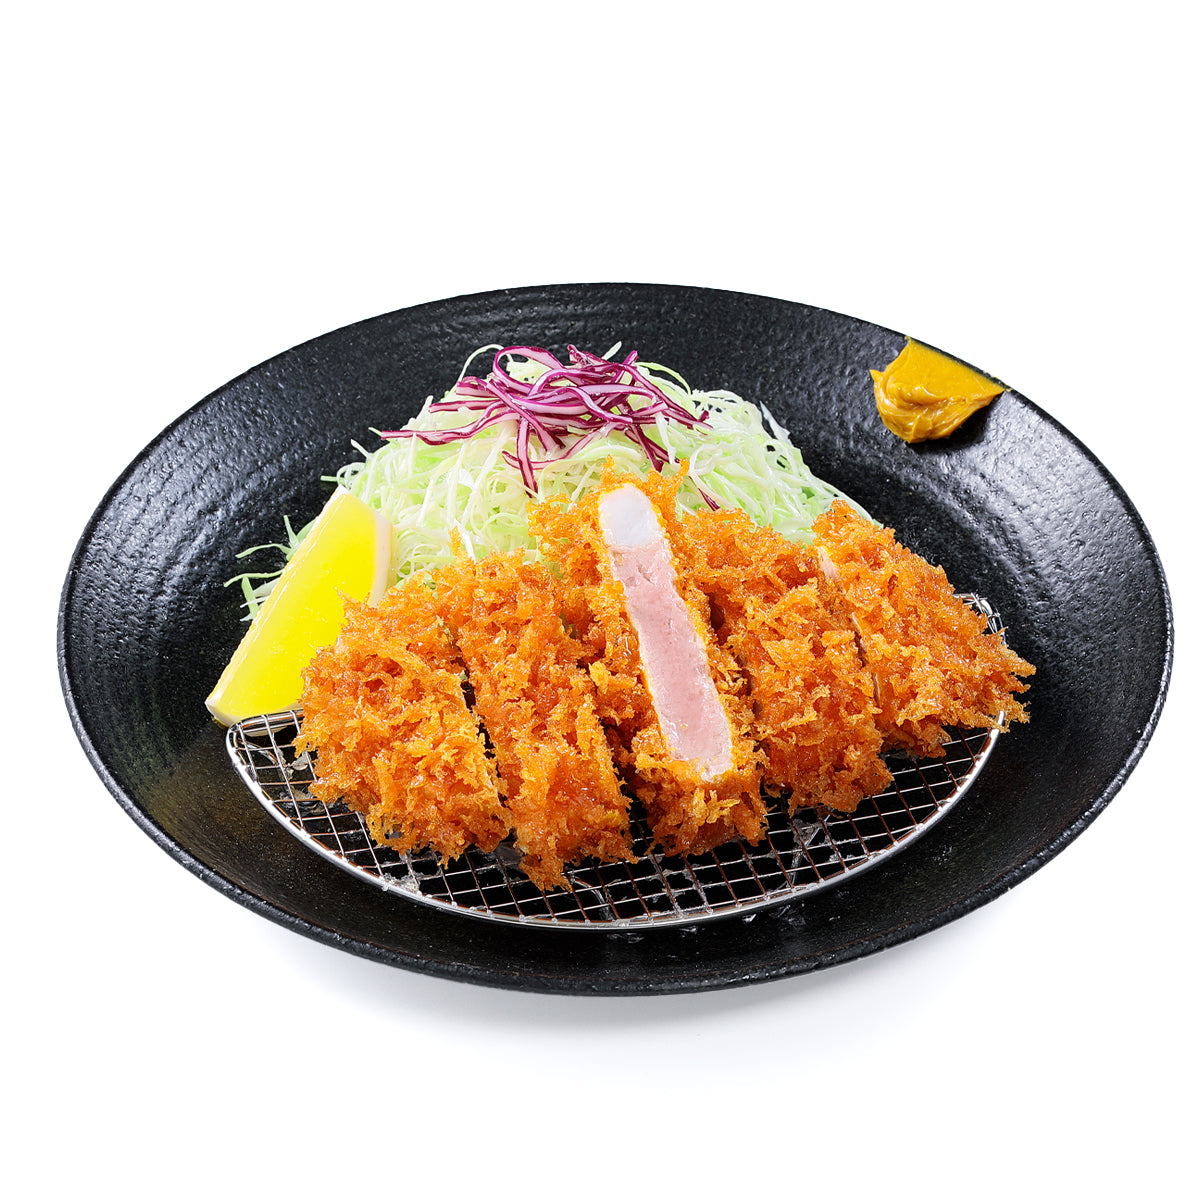 オリジナル食品サンプル「ロースとんかつ」の商品画像です。(英語表記) Tonkatus / Japanese pork cutlet